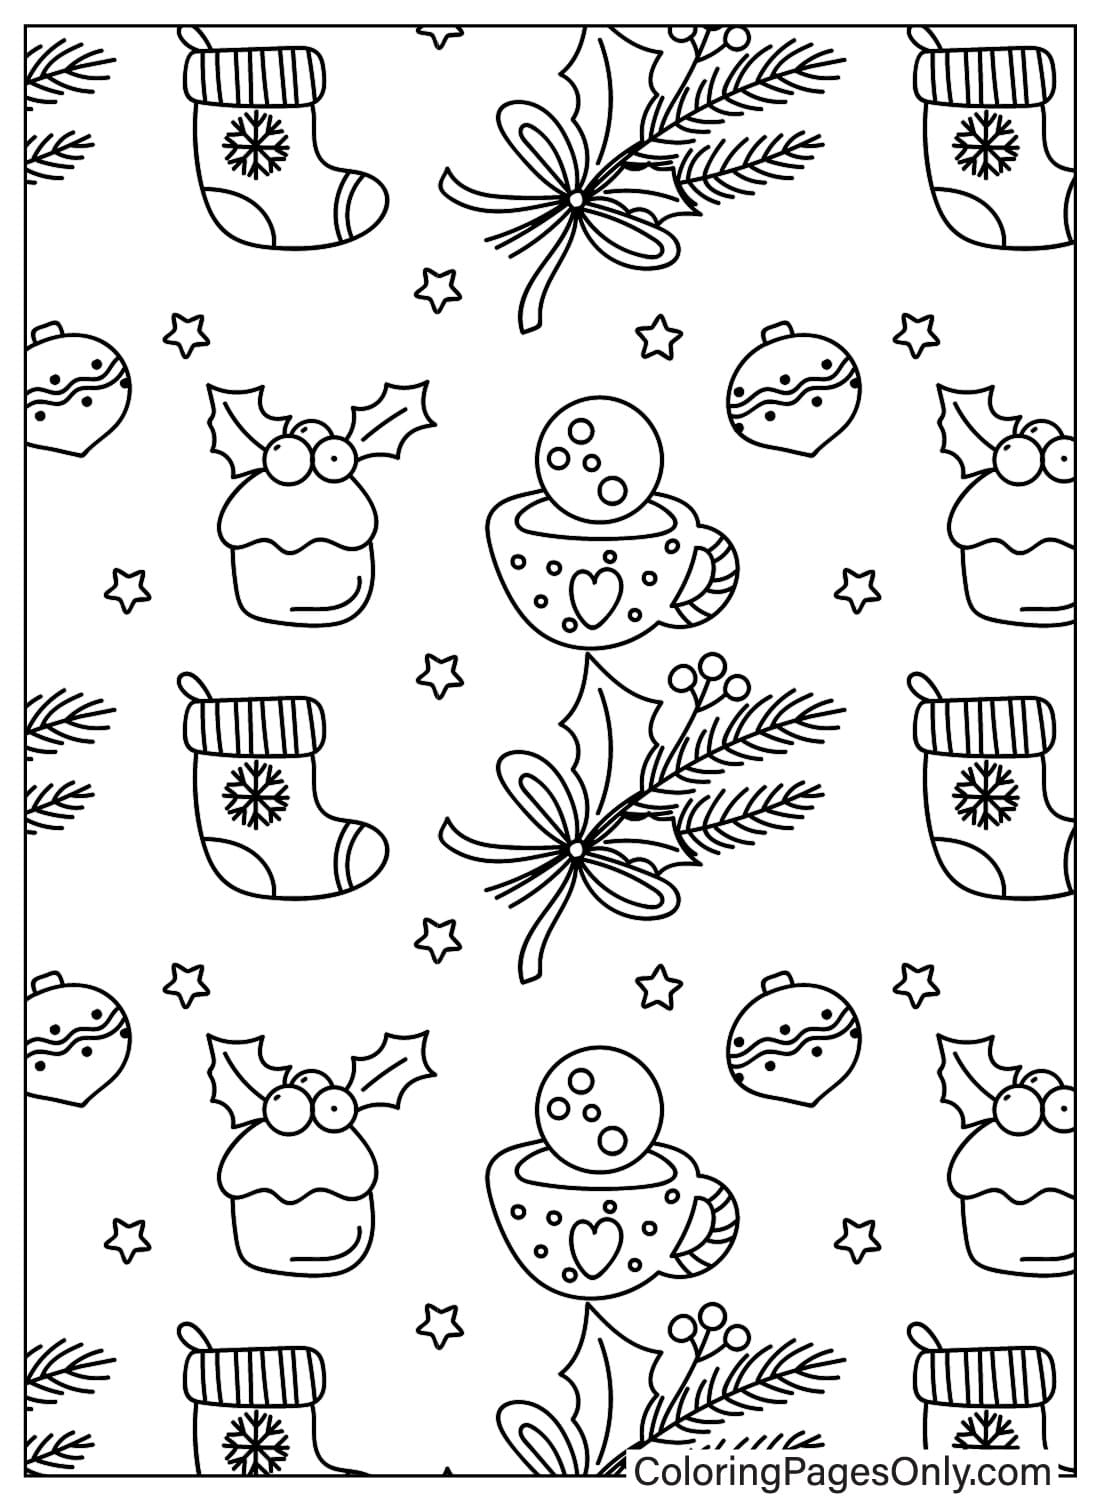 Página para colorear de patrón navideño JPG de Patrón navideño